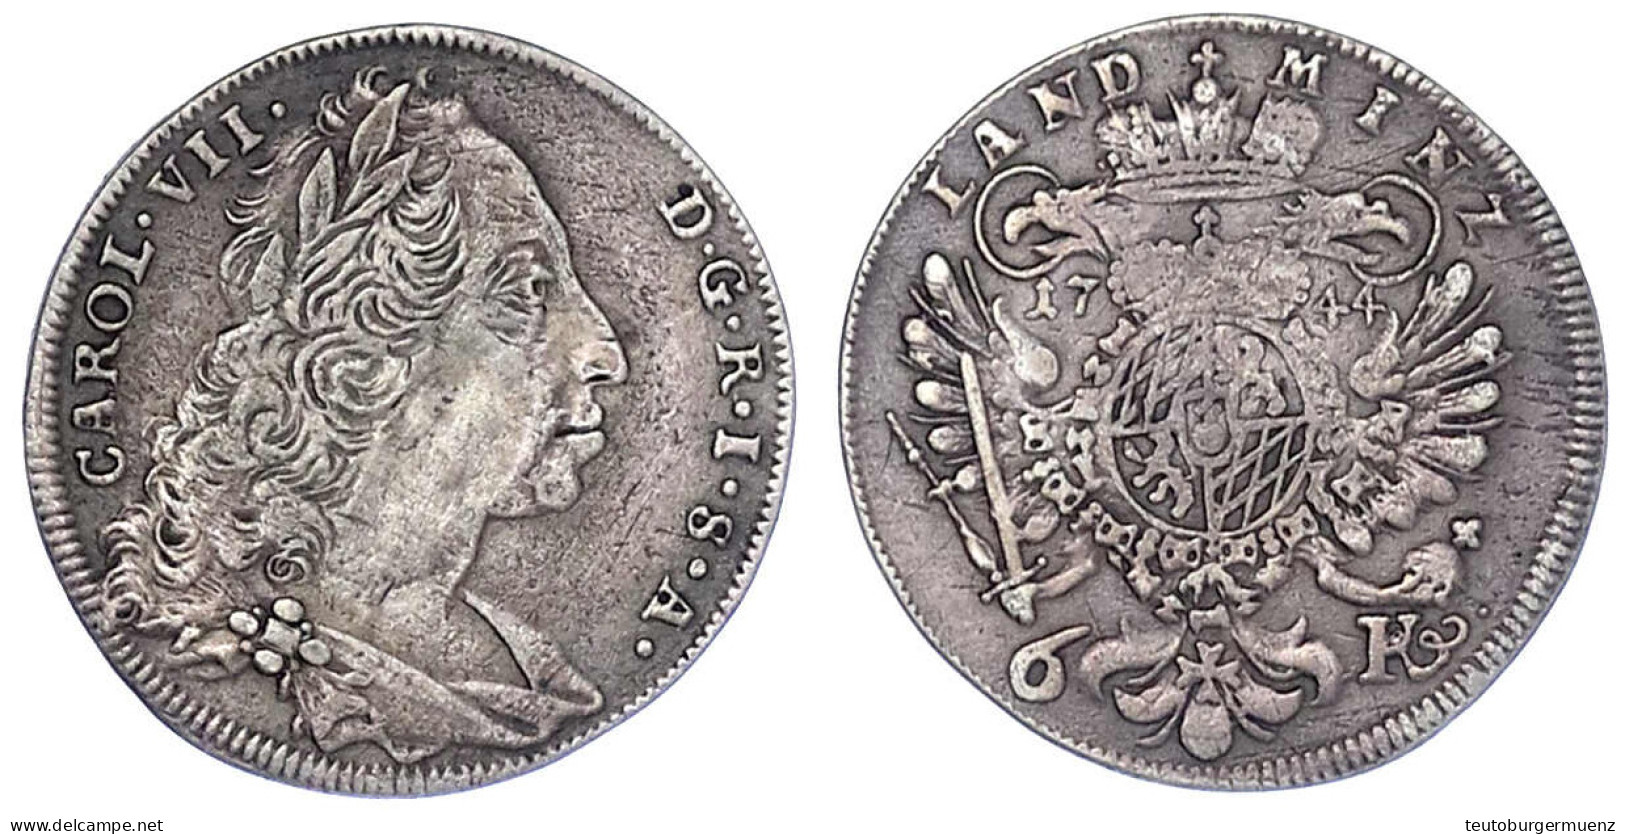 6 Kreuzer 1744, Mit Kaisertitel. Sehr Schön, Schöne Patina. Hahn 276. Wittelsbach 1965. - Goldmünzen